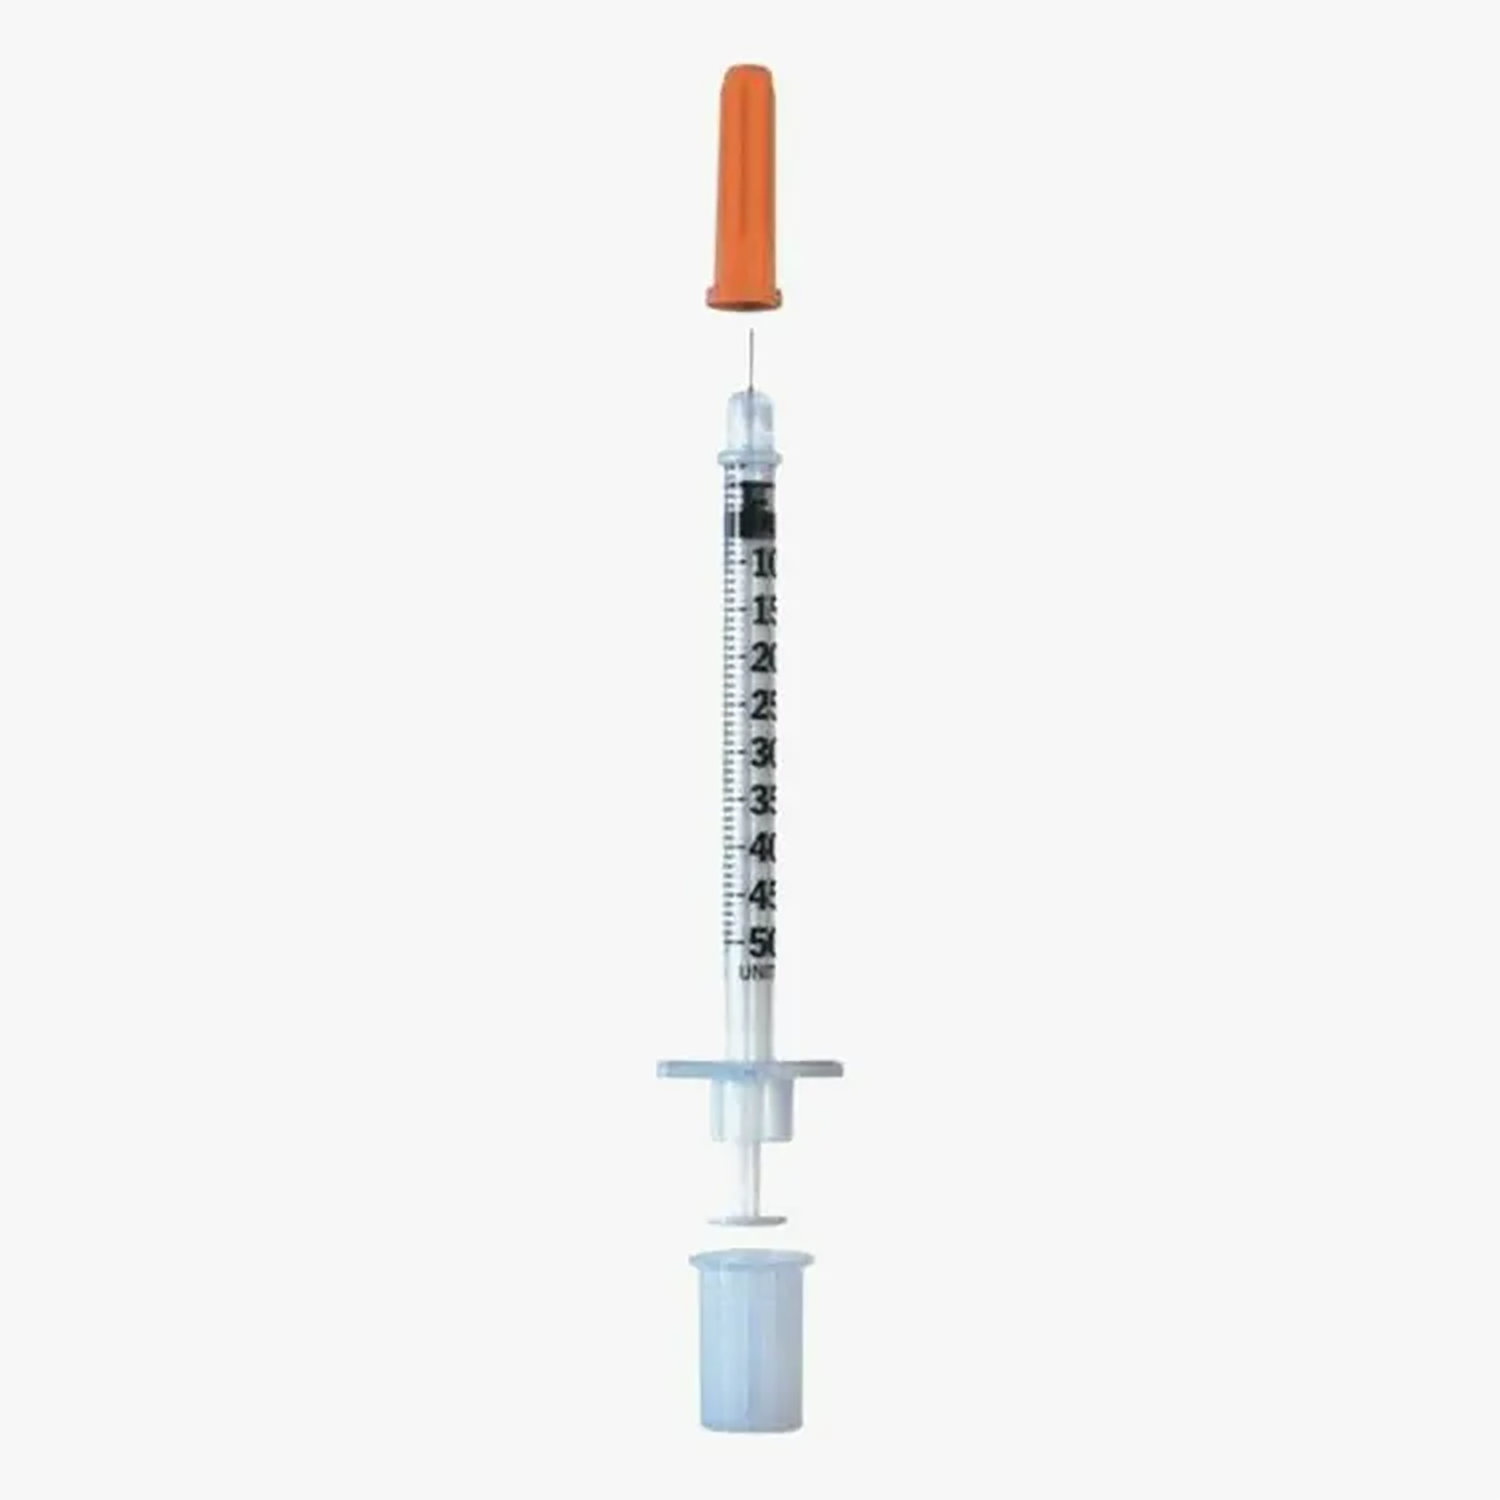 BD Microfine Insulin Syringe | 30G x 0.5ml | Short | Pack of 100